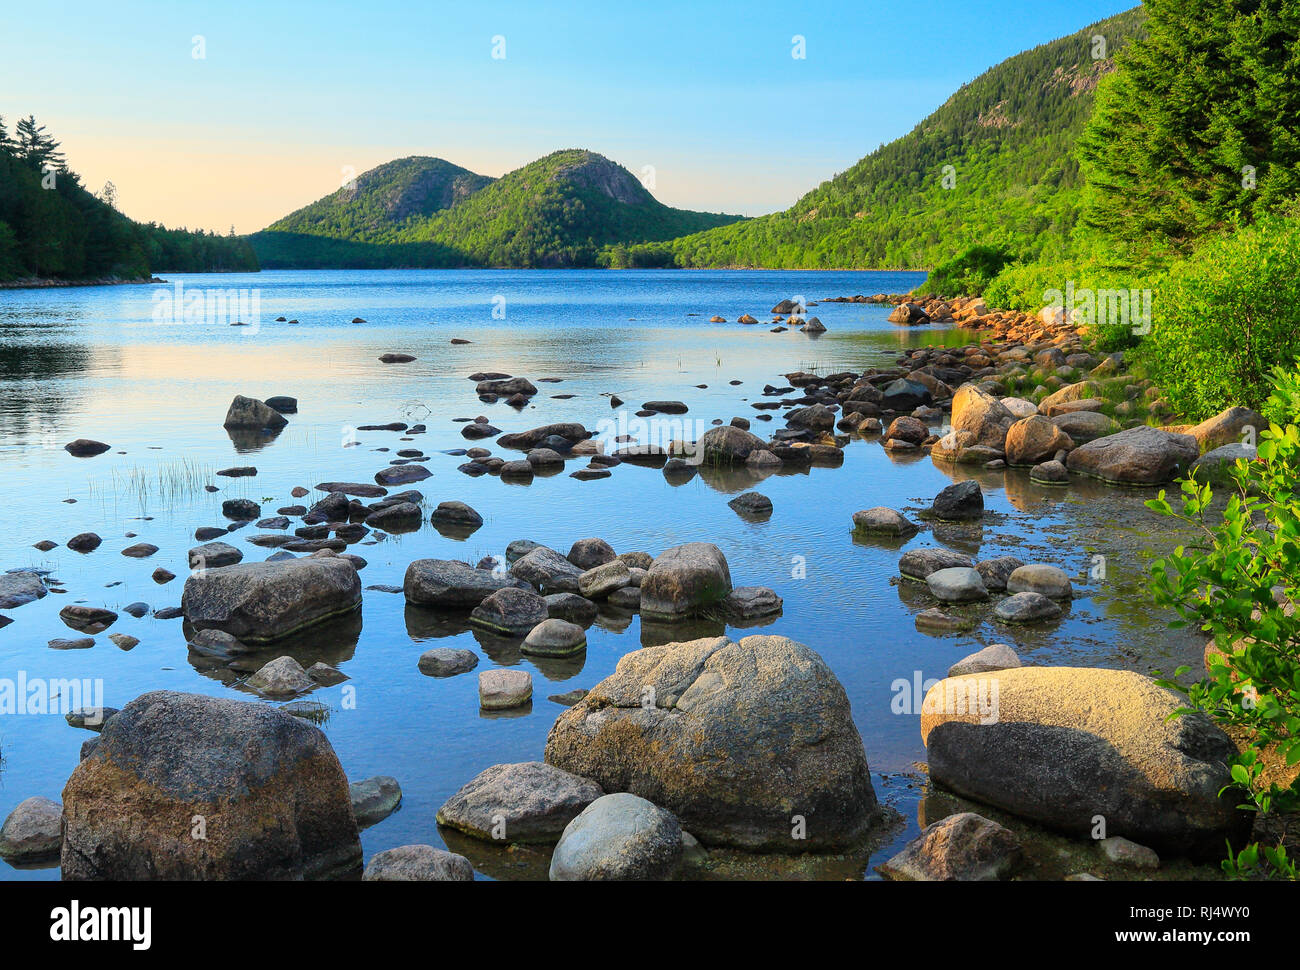 Sentier de la rive de l'étang de la Jordanie, l'Acadia National Park, Mount Desert Island, Maine, USA Banque D'Images